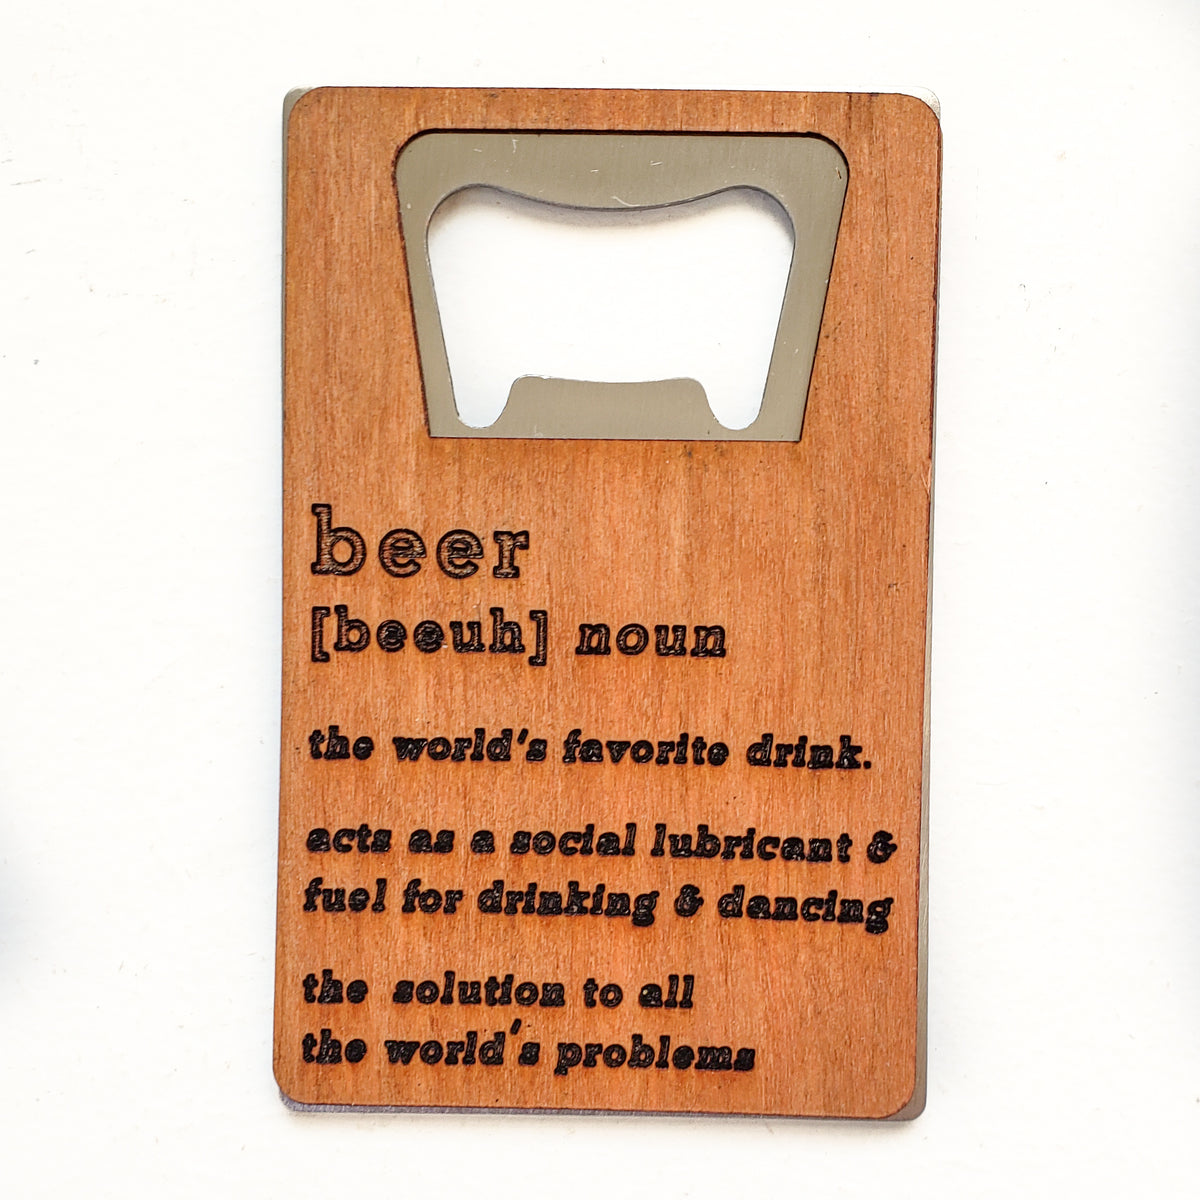 Card Size Bottle Opener - Beer [beeuh] noun